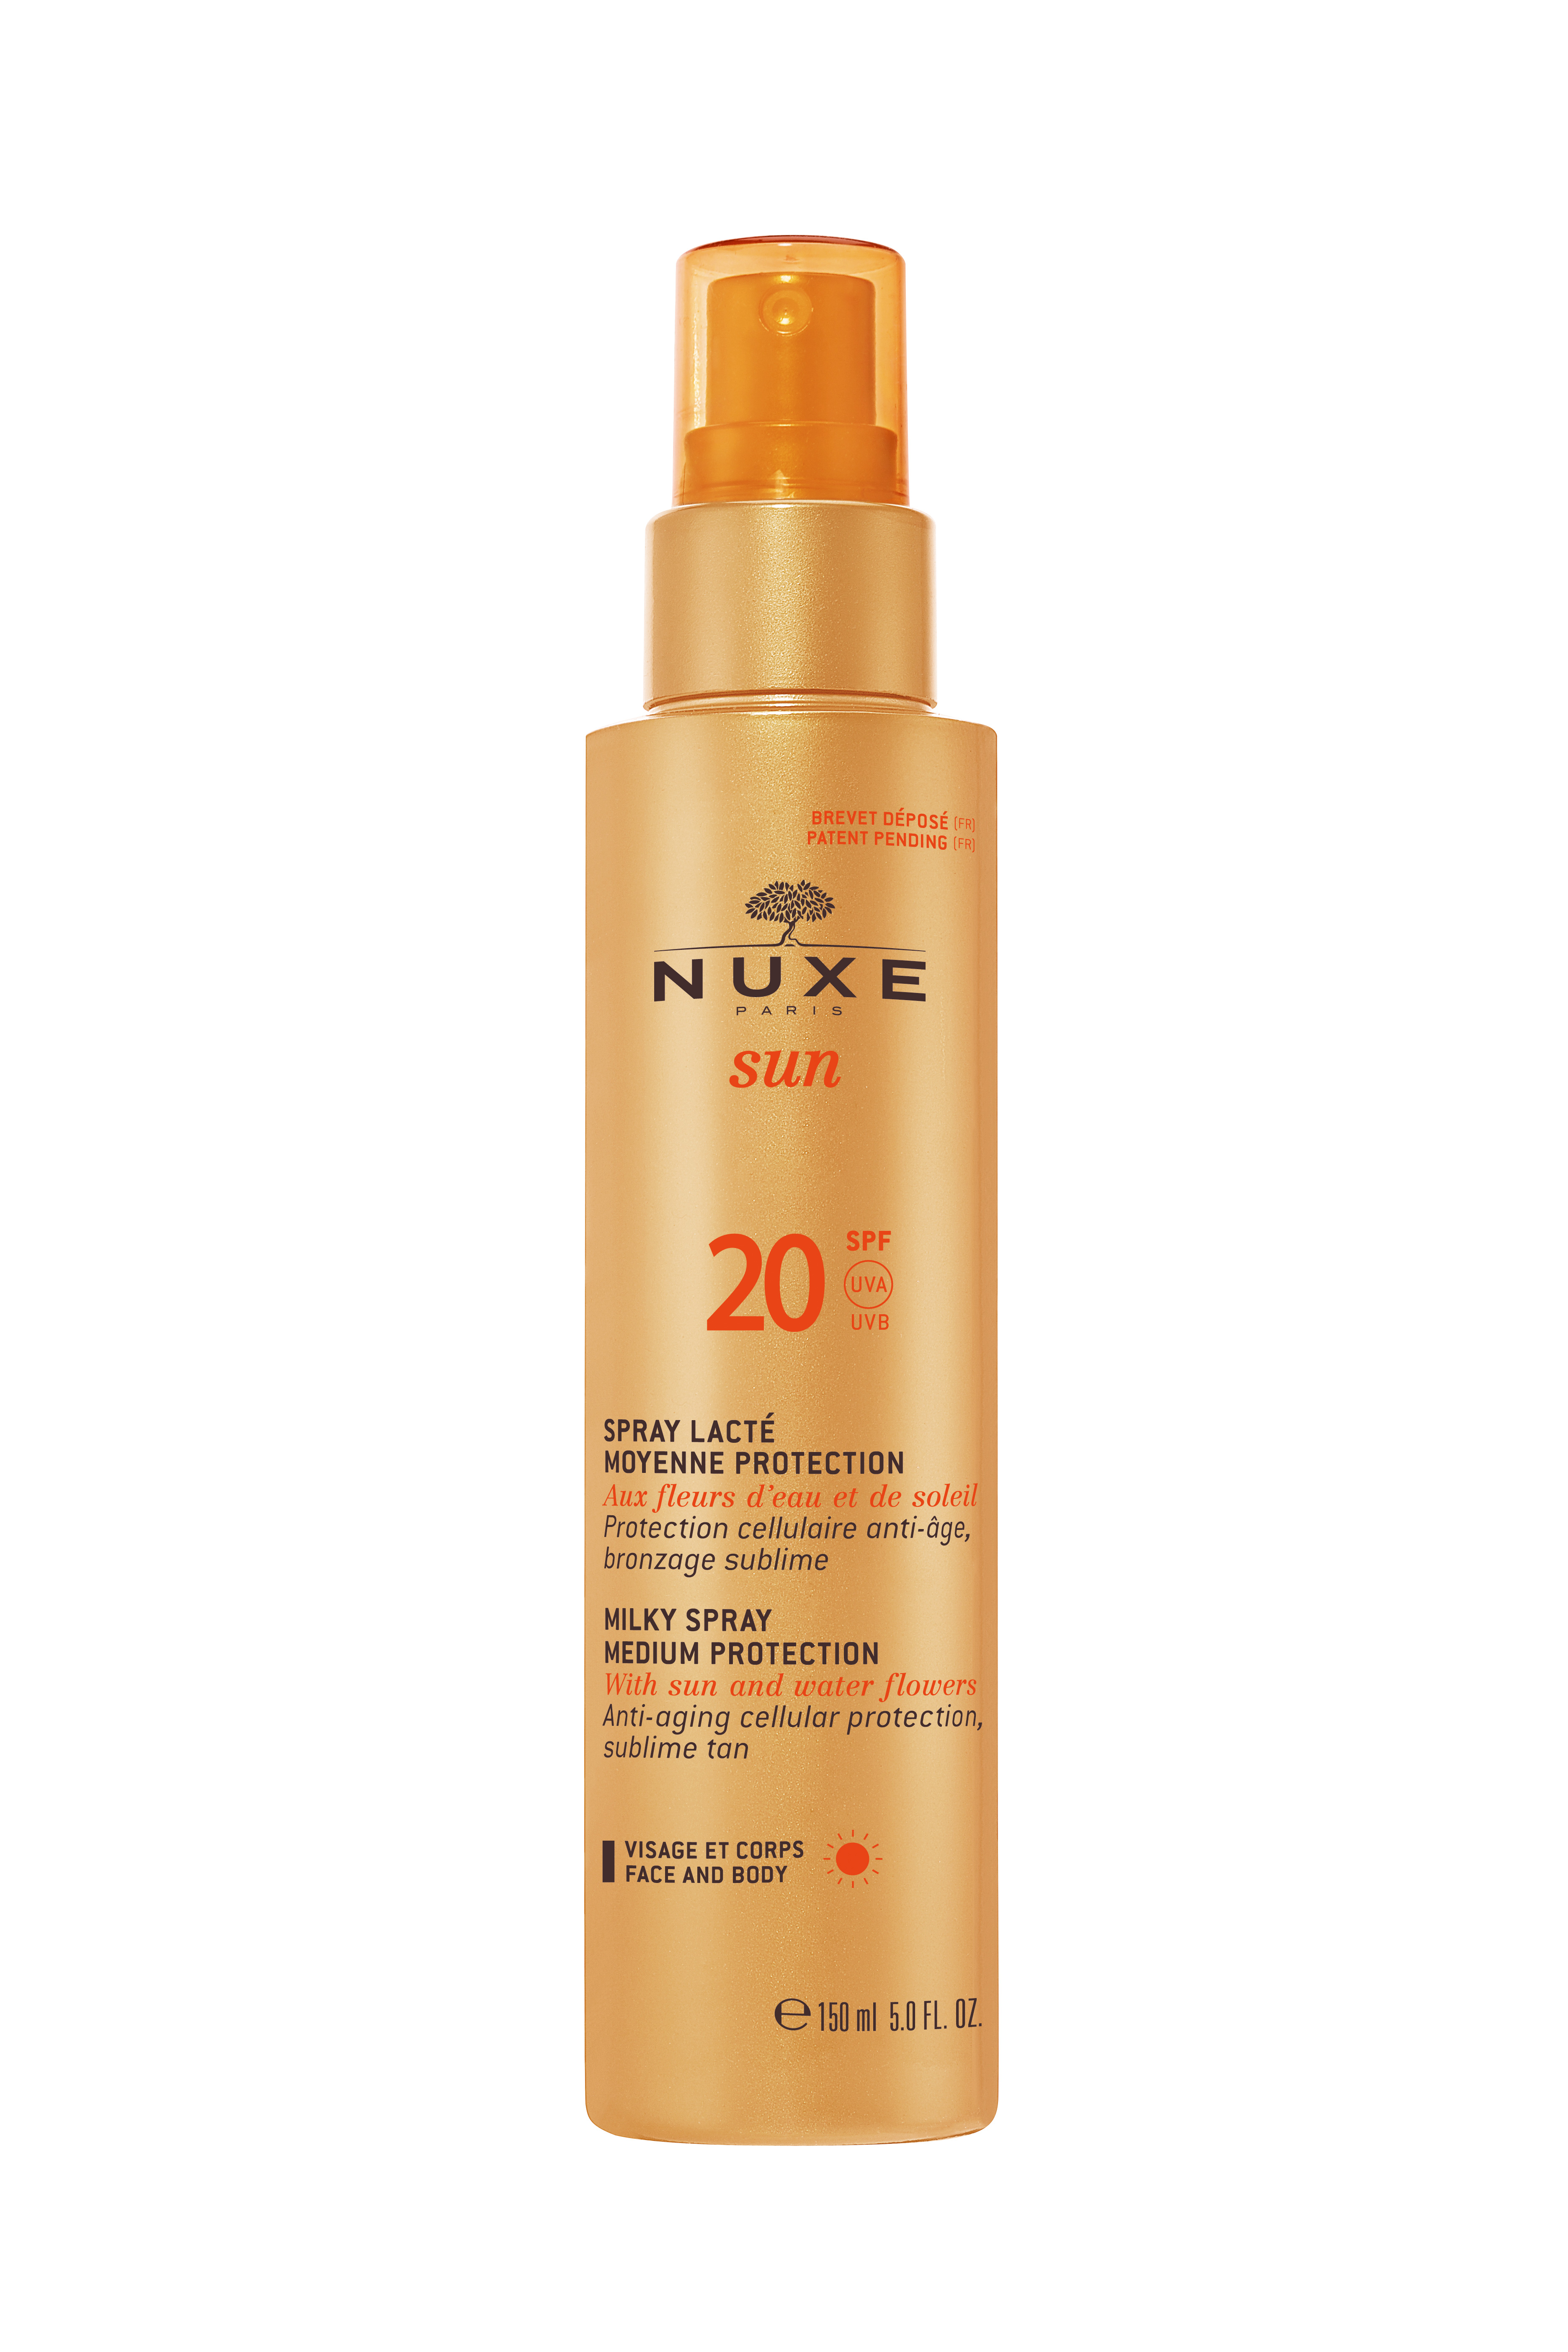 NUXE SUN Milky Spray Face & Body SPF20 150ml